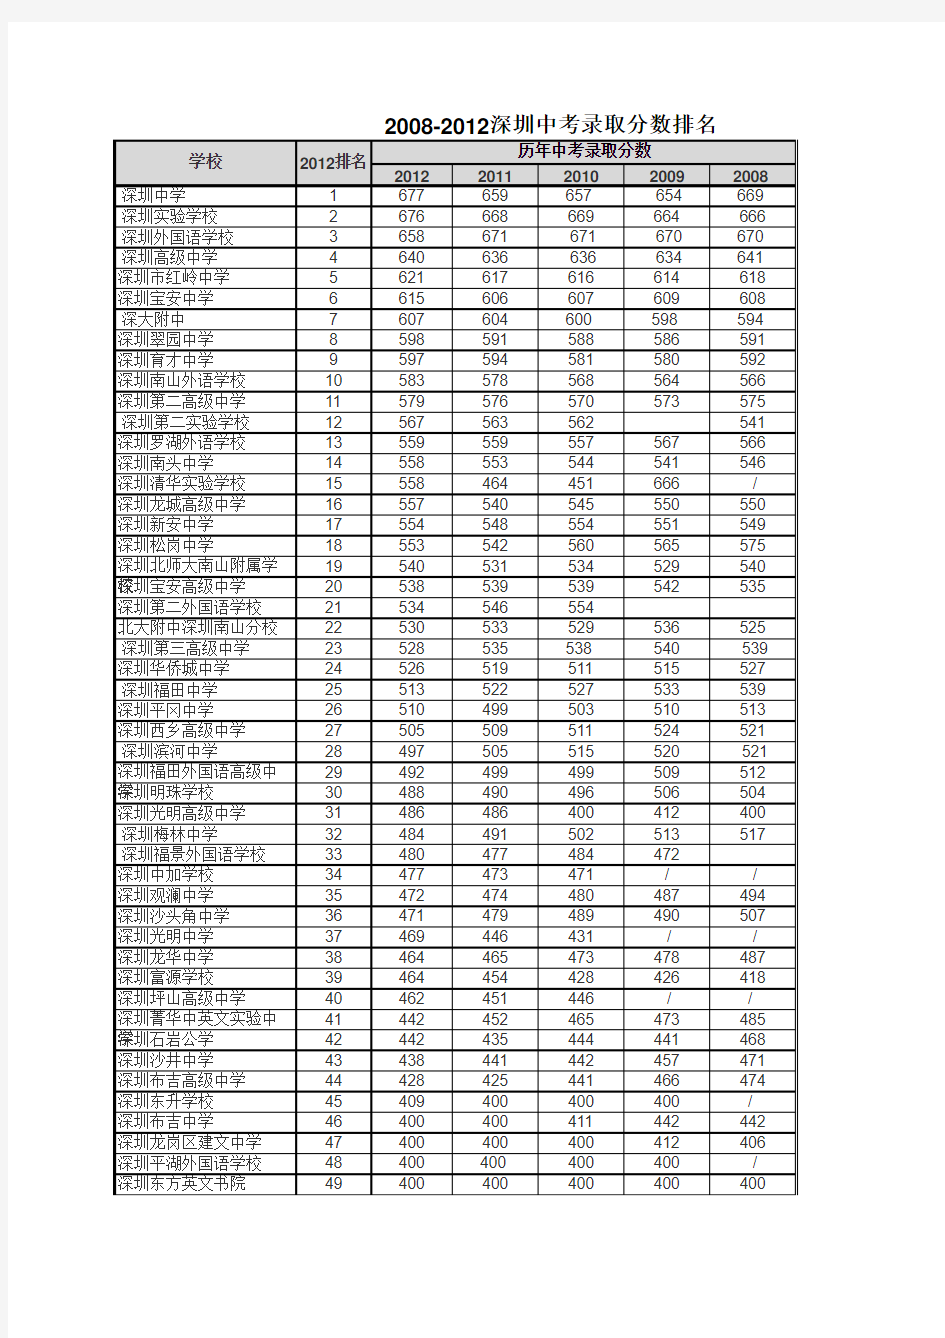 2008-2012深圳中考录取分数排名